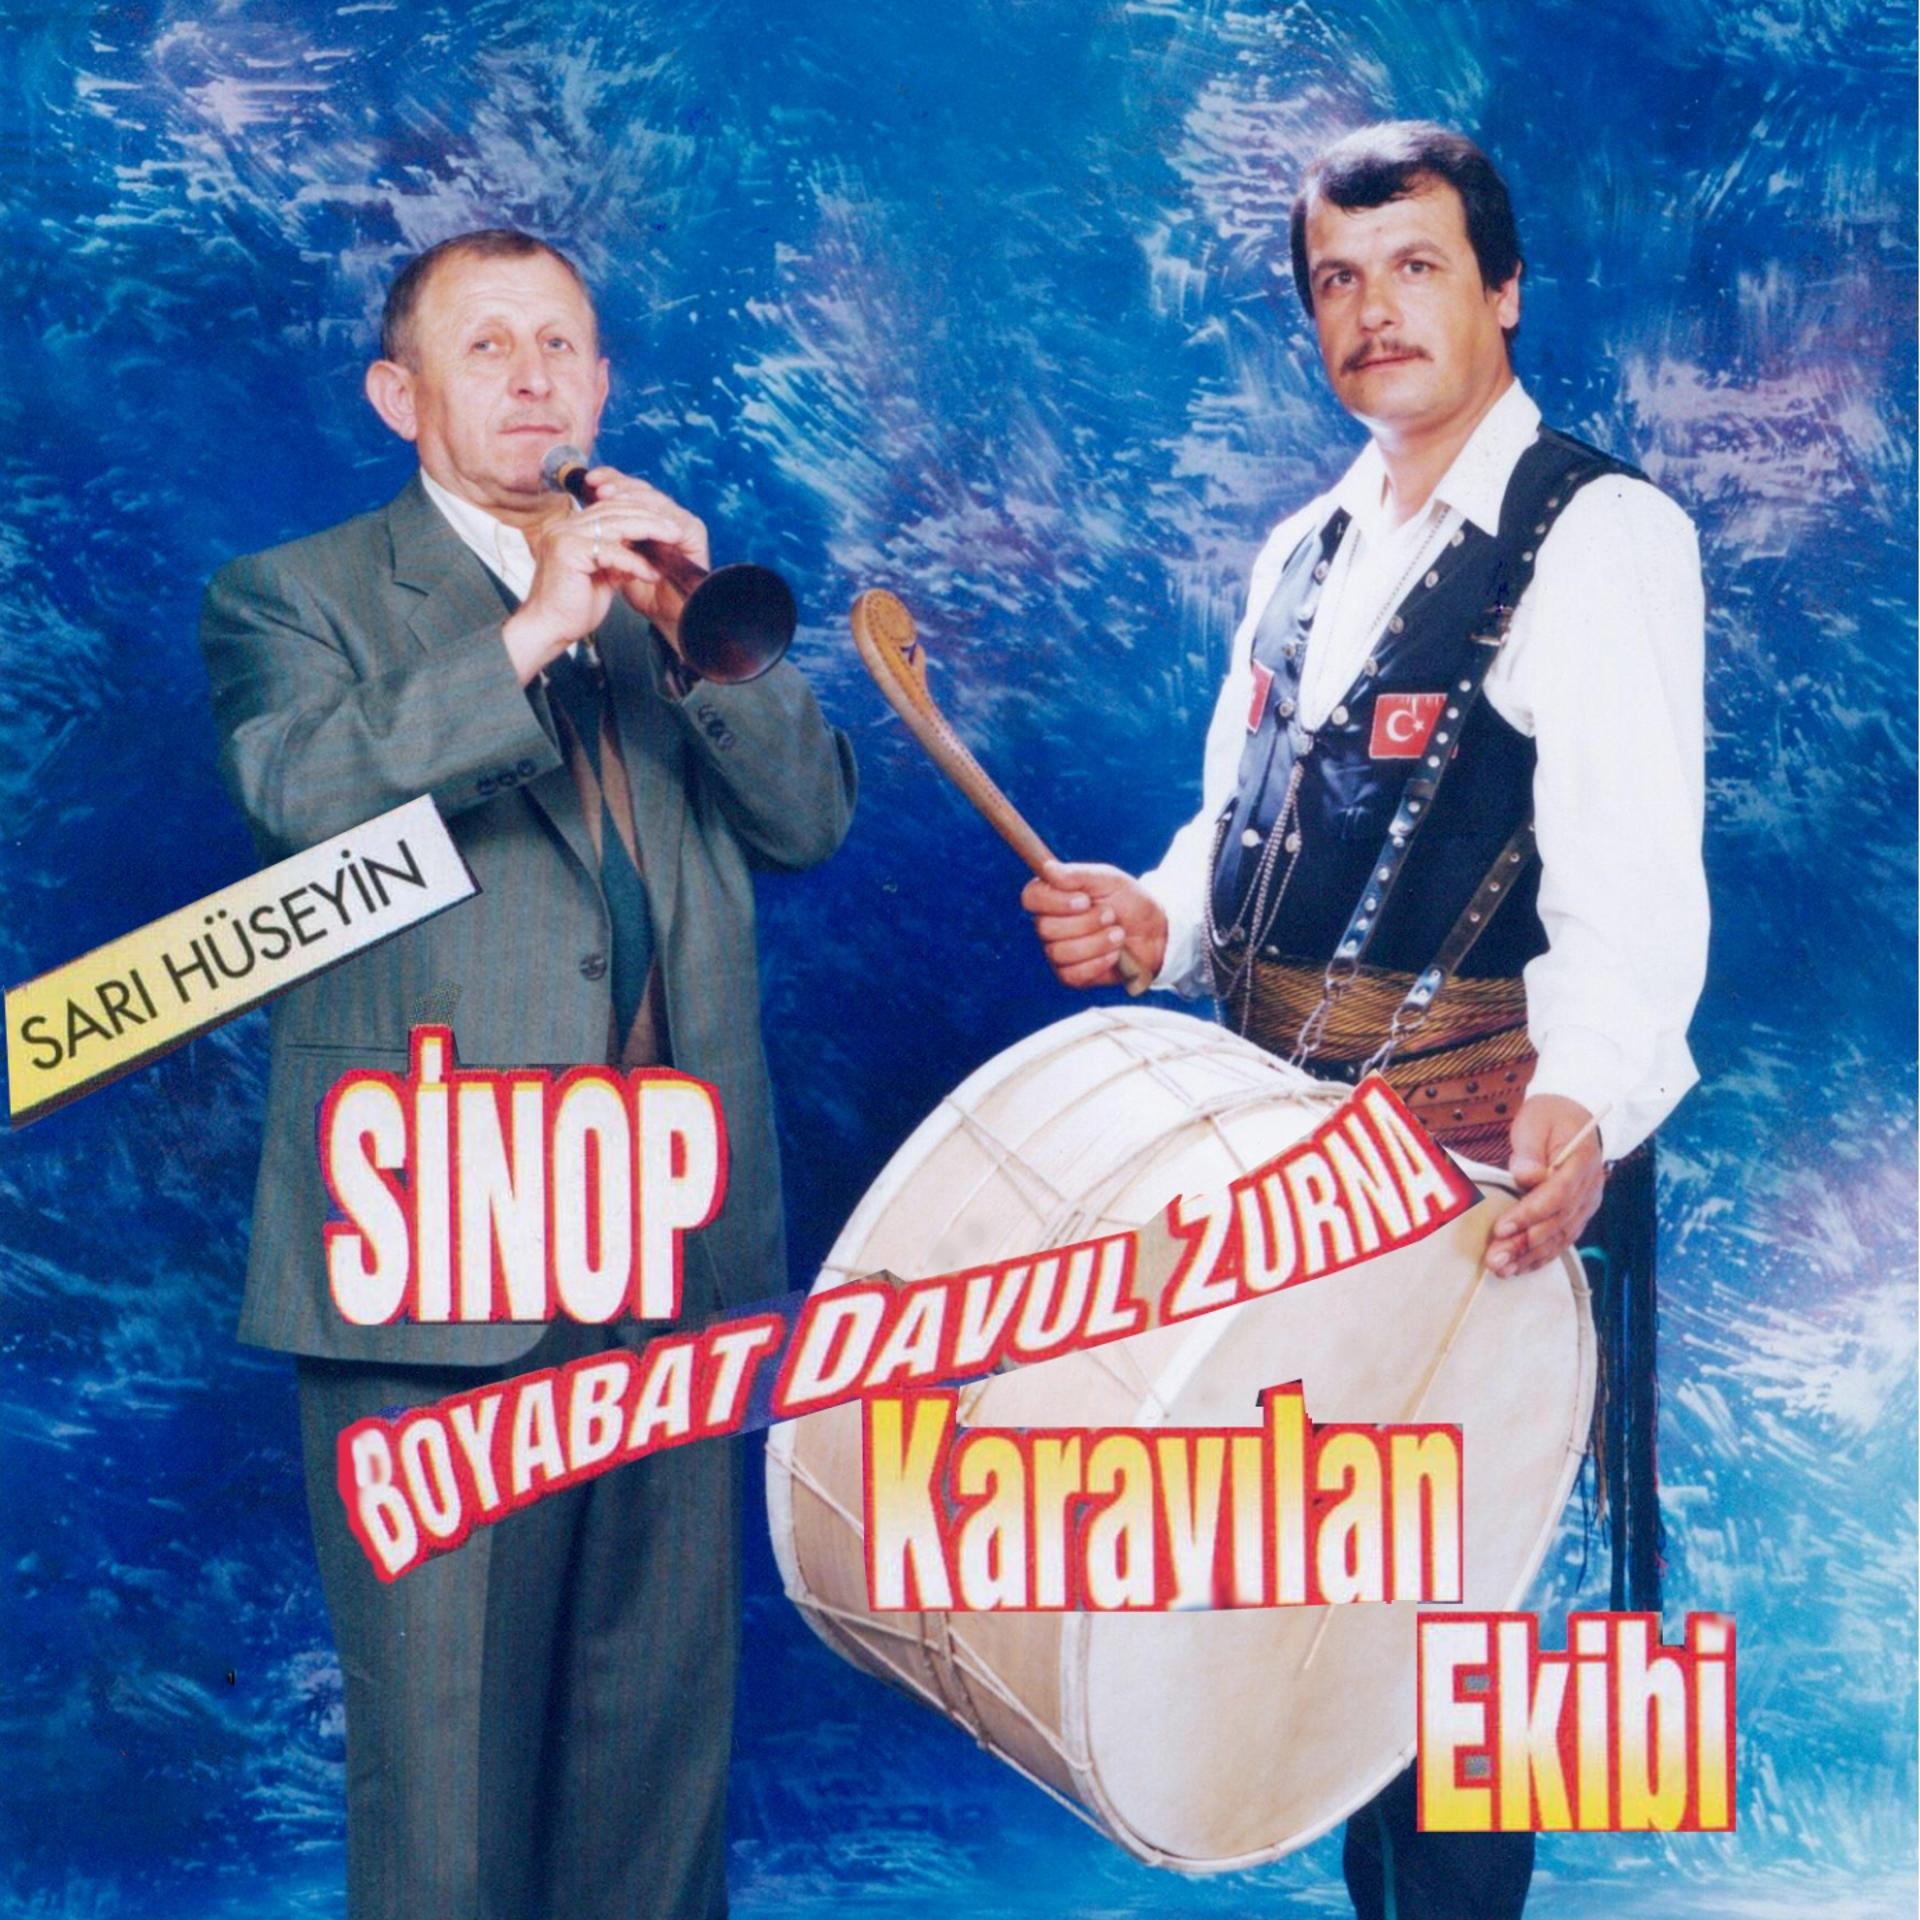 Постер альбома Sinop Boyabat Davul Zurna Karayılan Ekibi